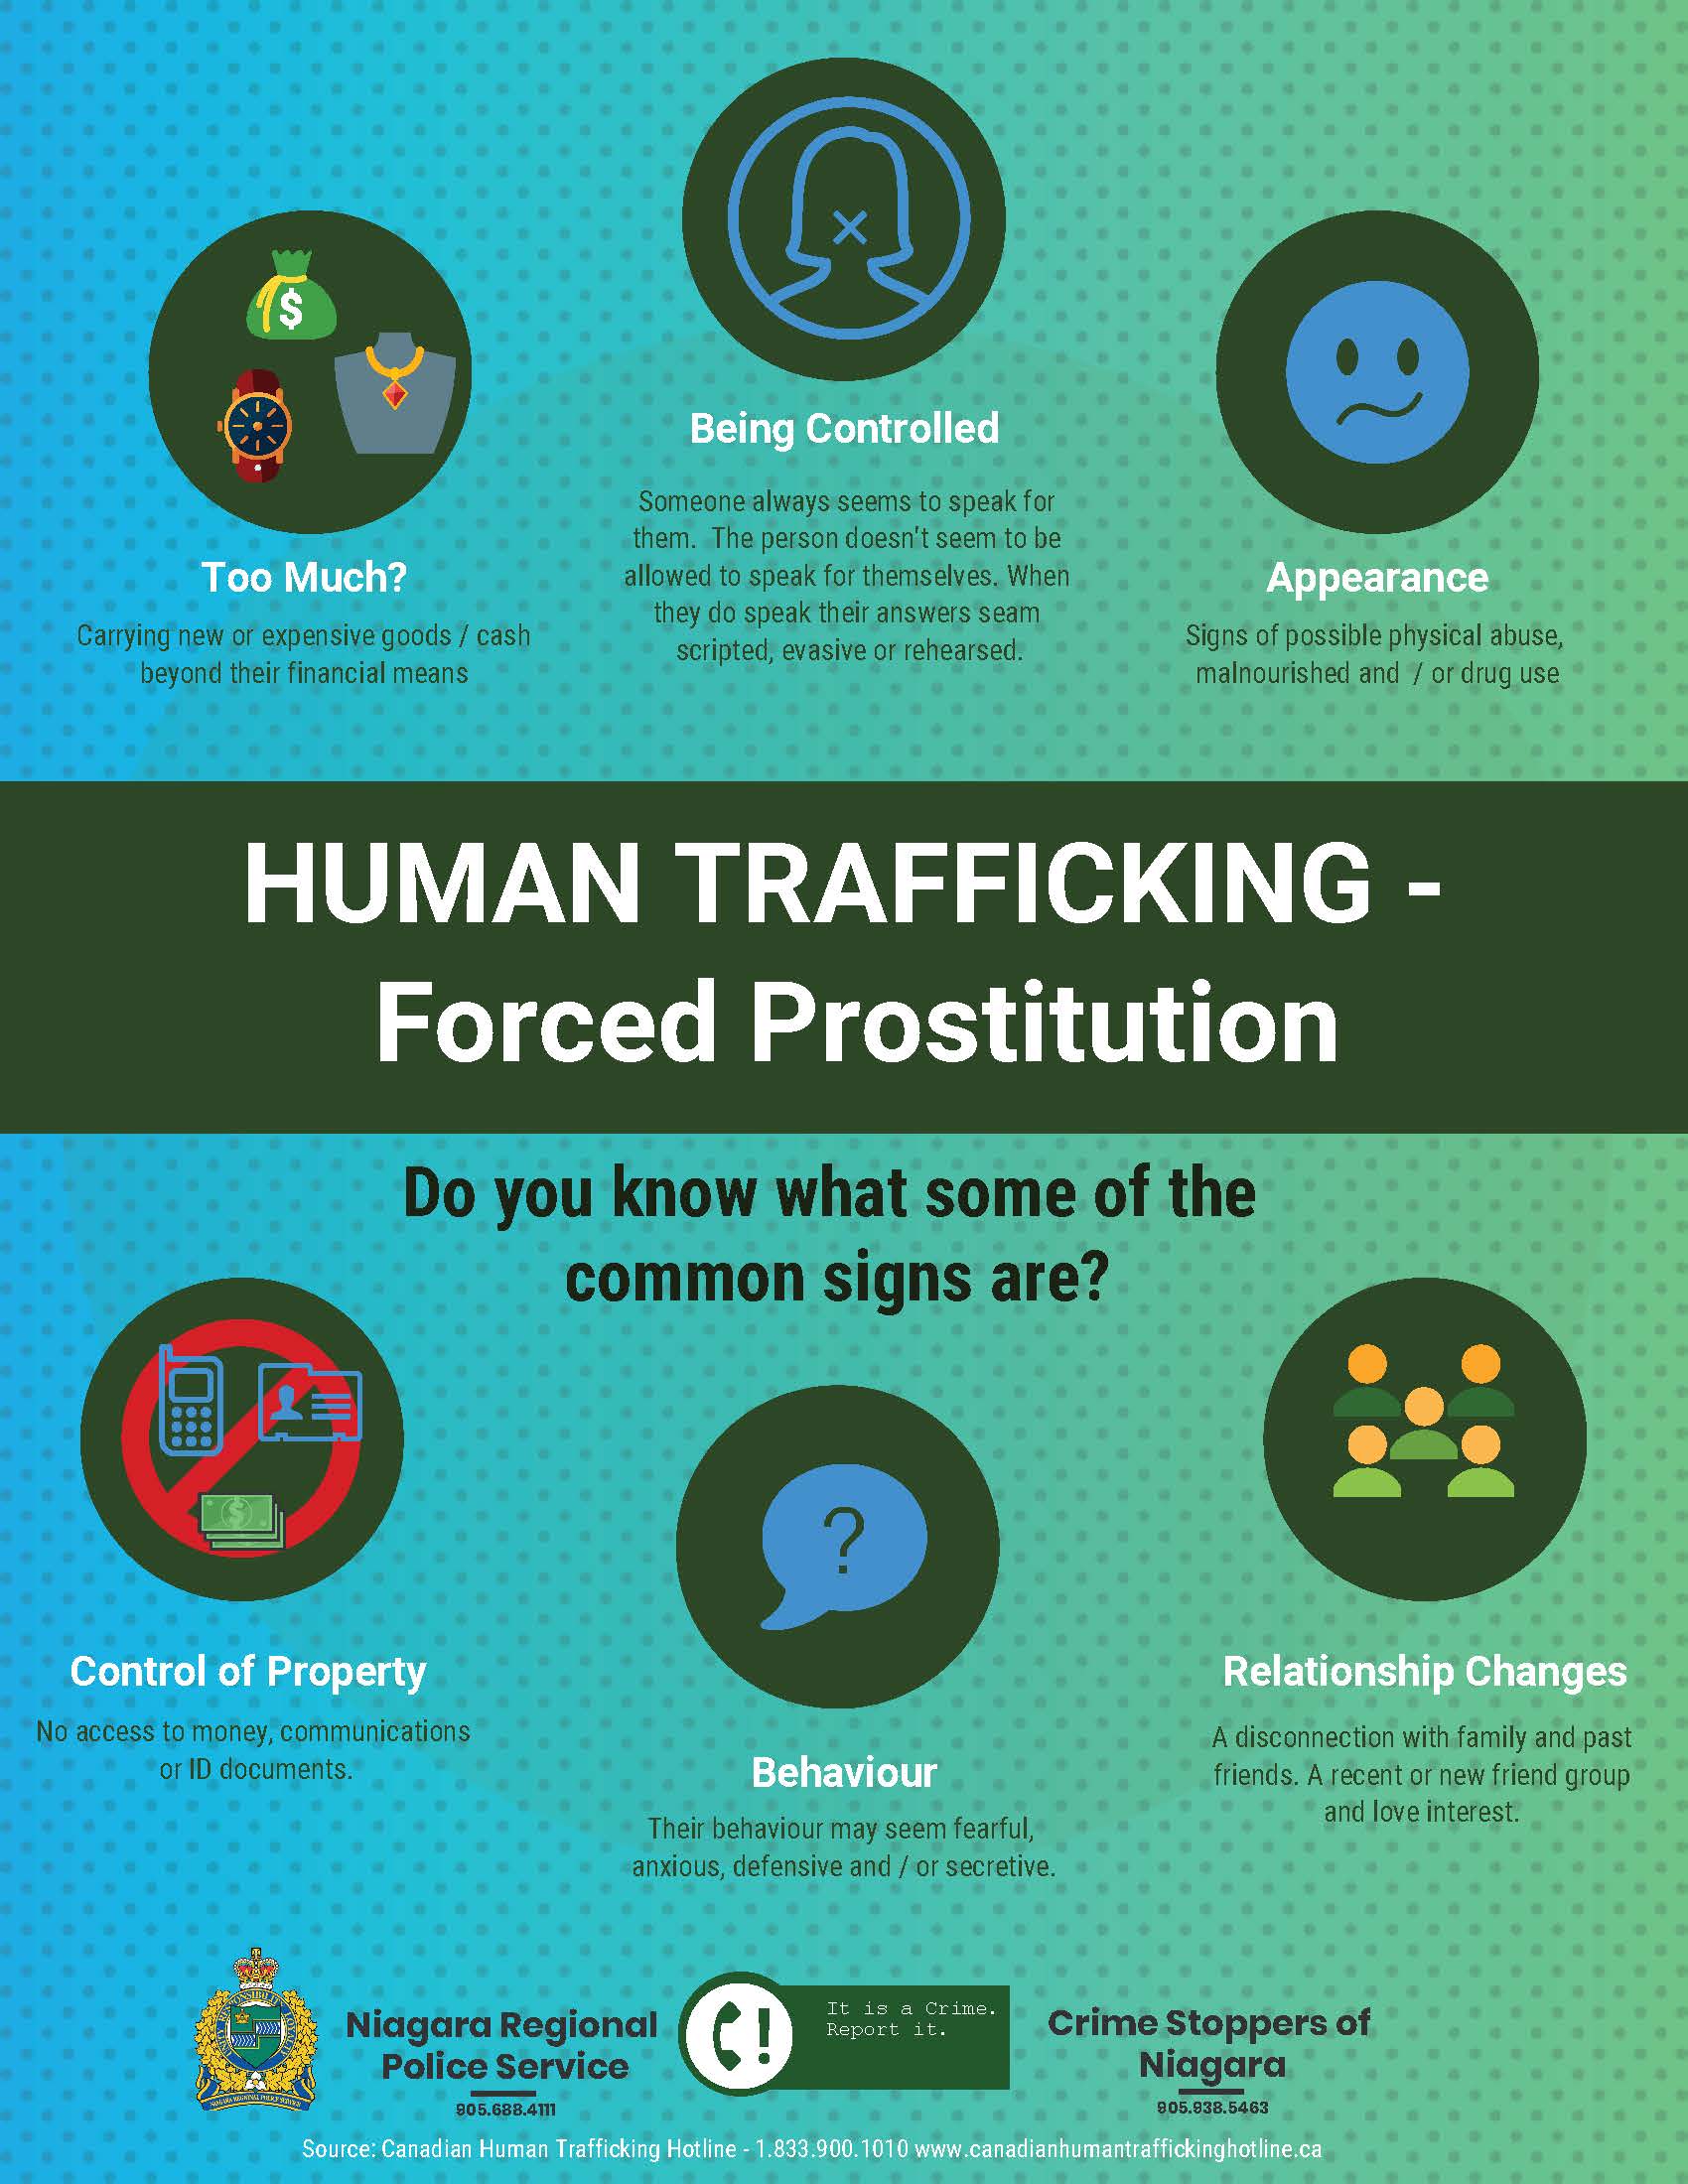 info graphic regarding human trafficking